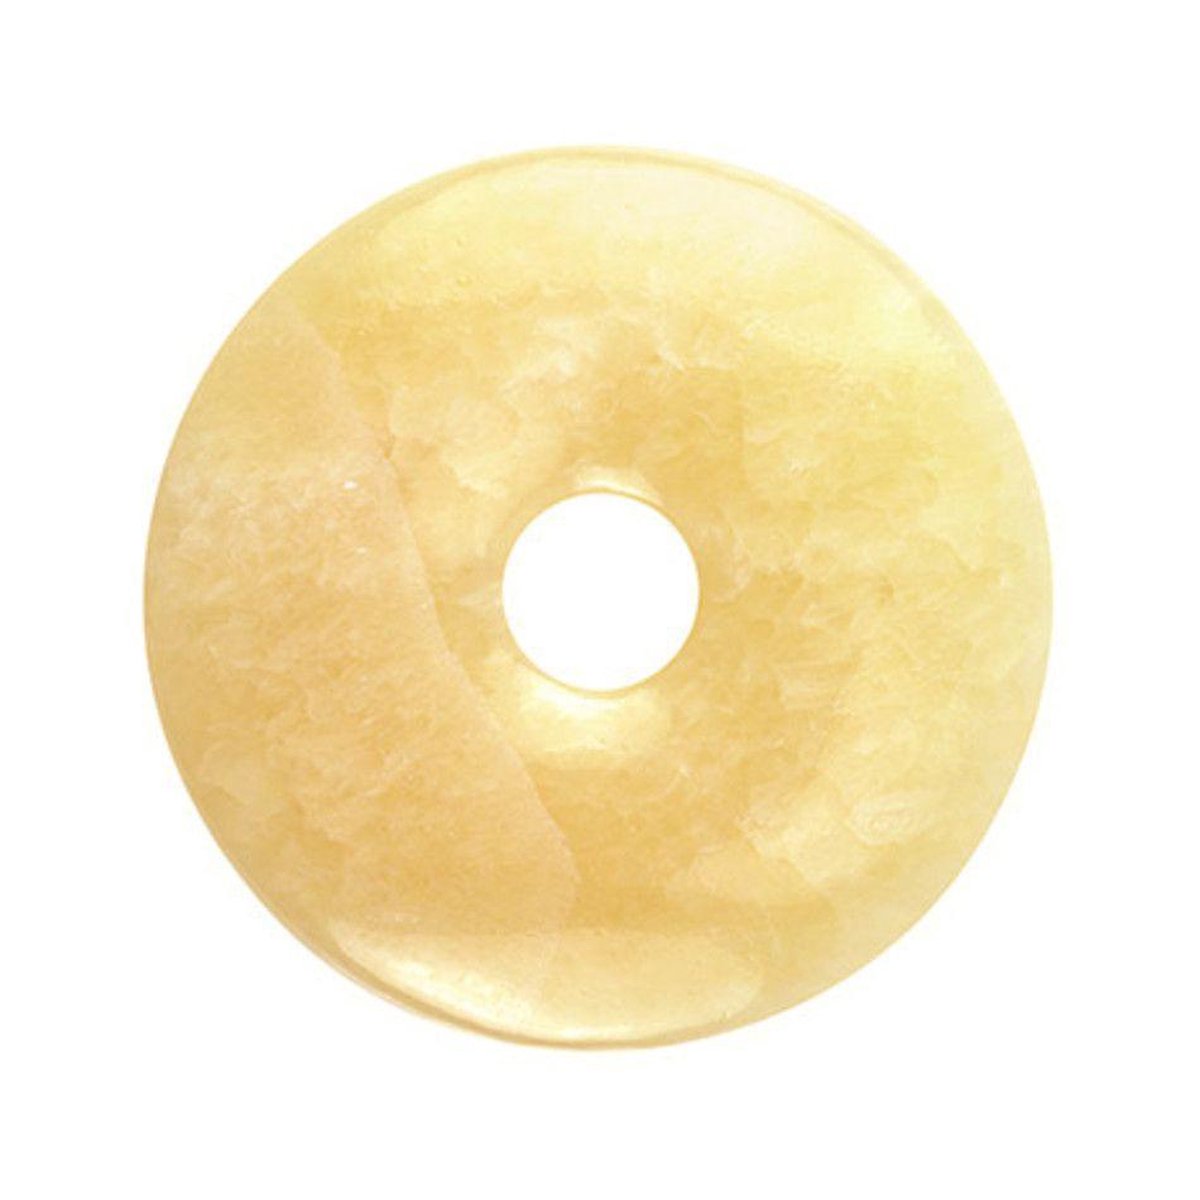 Ruben Robijn Calciet geel donut 40 mm